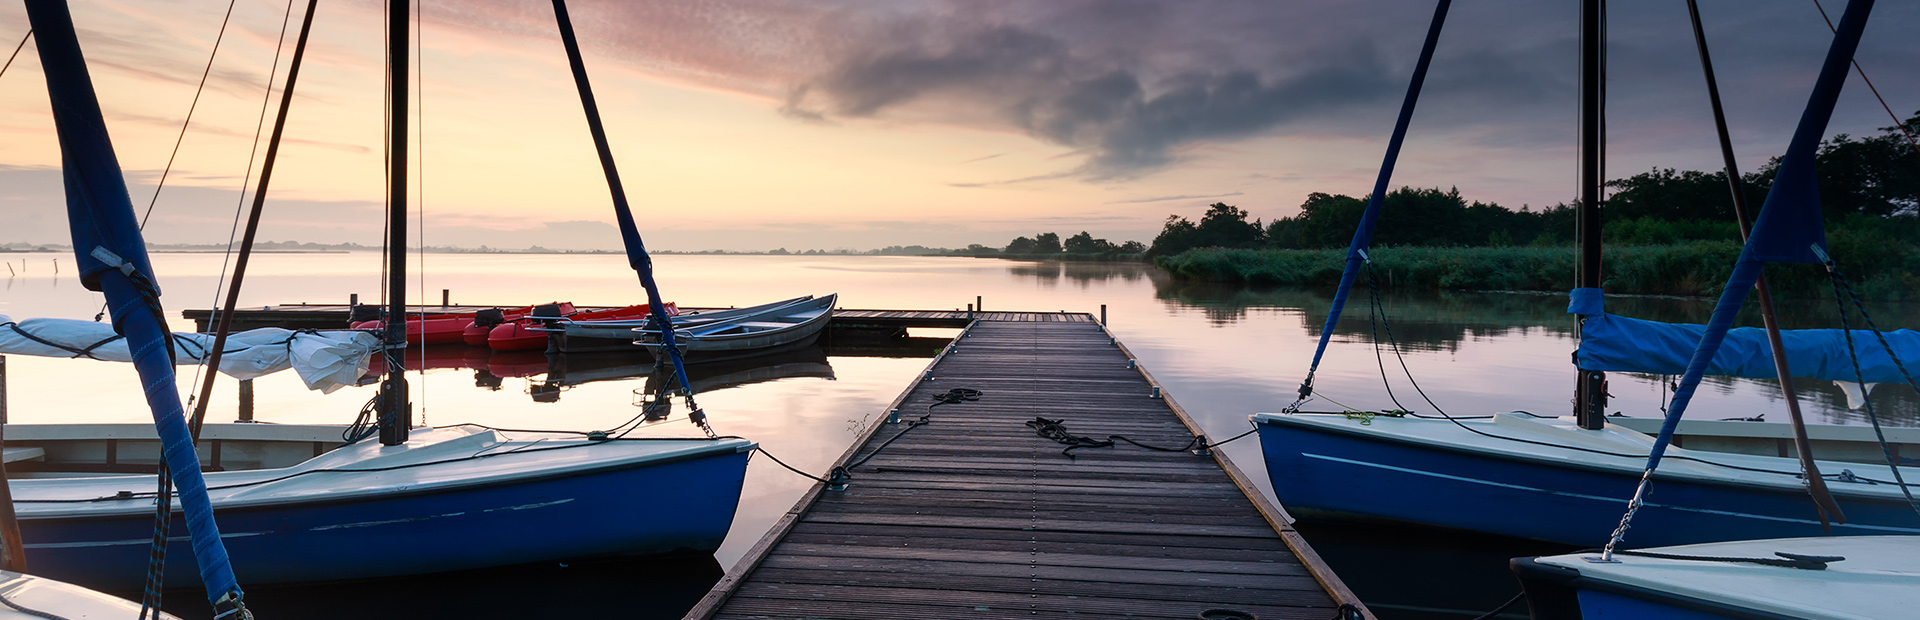 Pomost na mazurskim jeziorze do którego przycumowane są żaglówki w trakcie pochmurnej pogody i  zachodzącego słońca.   